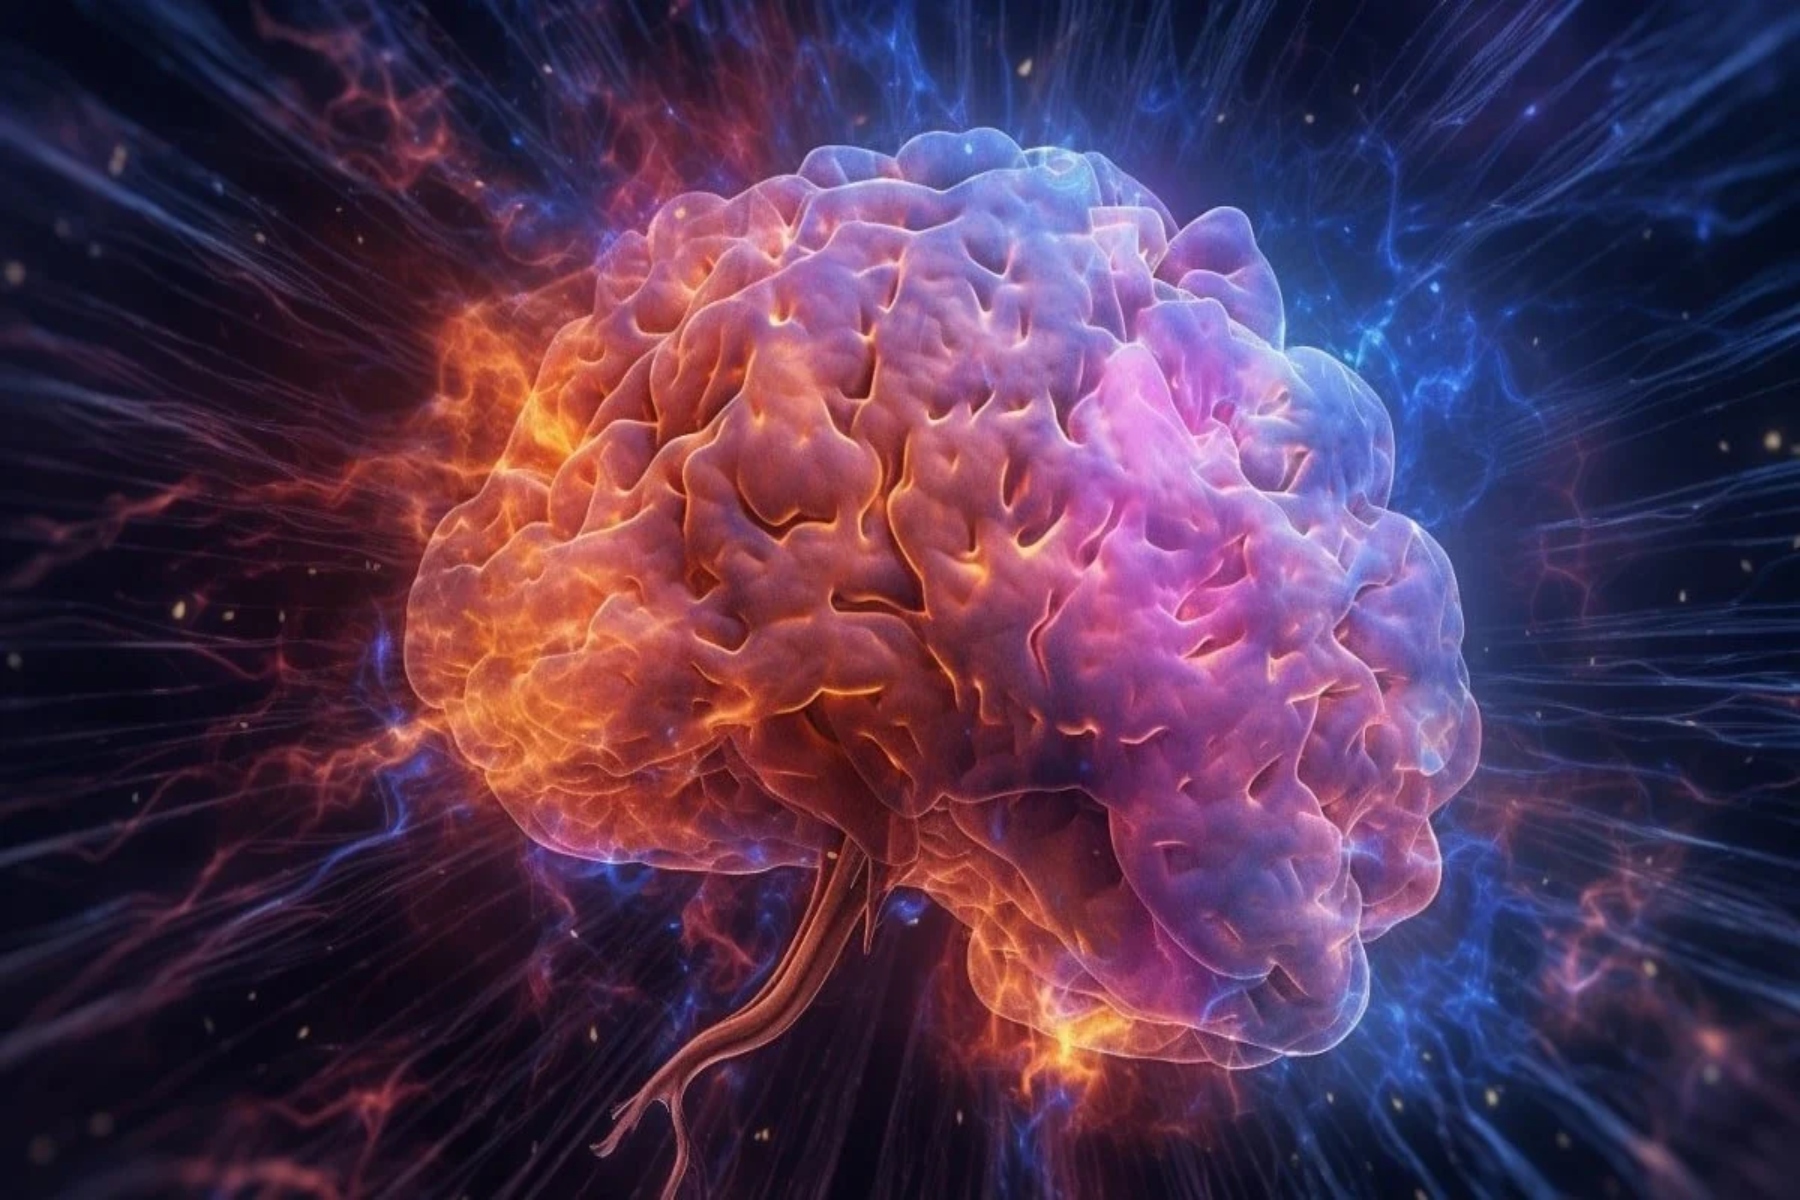 Νευροεπιστήμη: Ανθρώπινη “νευρική πυξίδα” επισημάνθηκε σε νέα μελέτη